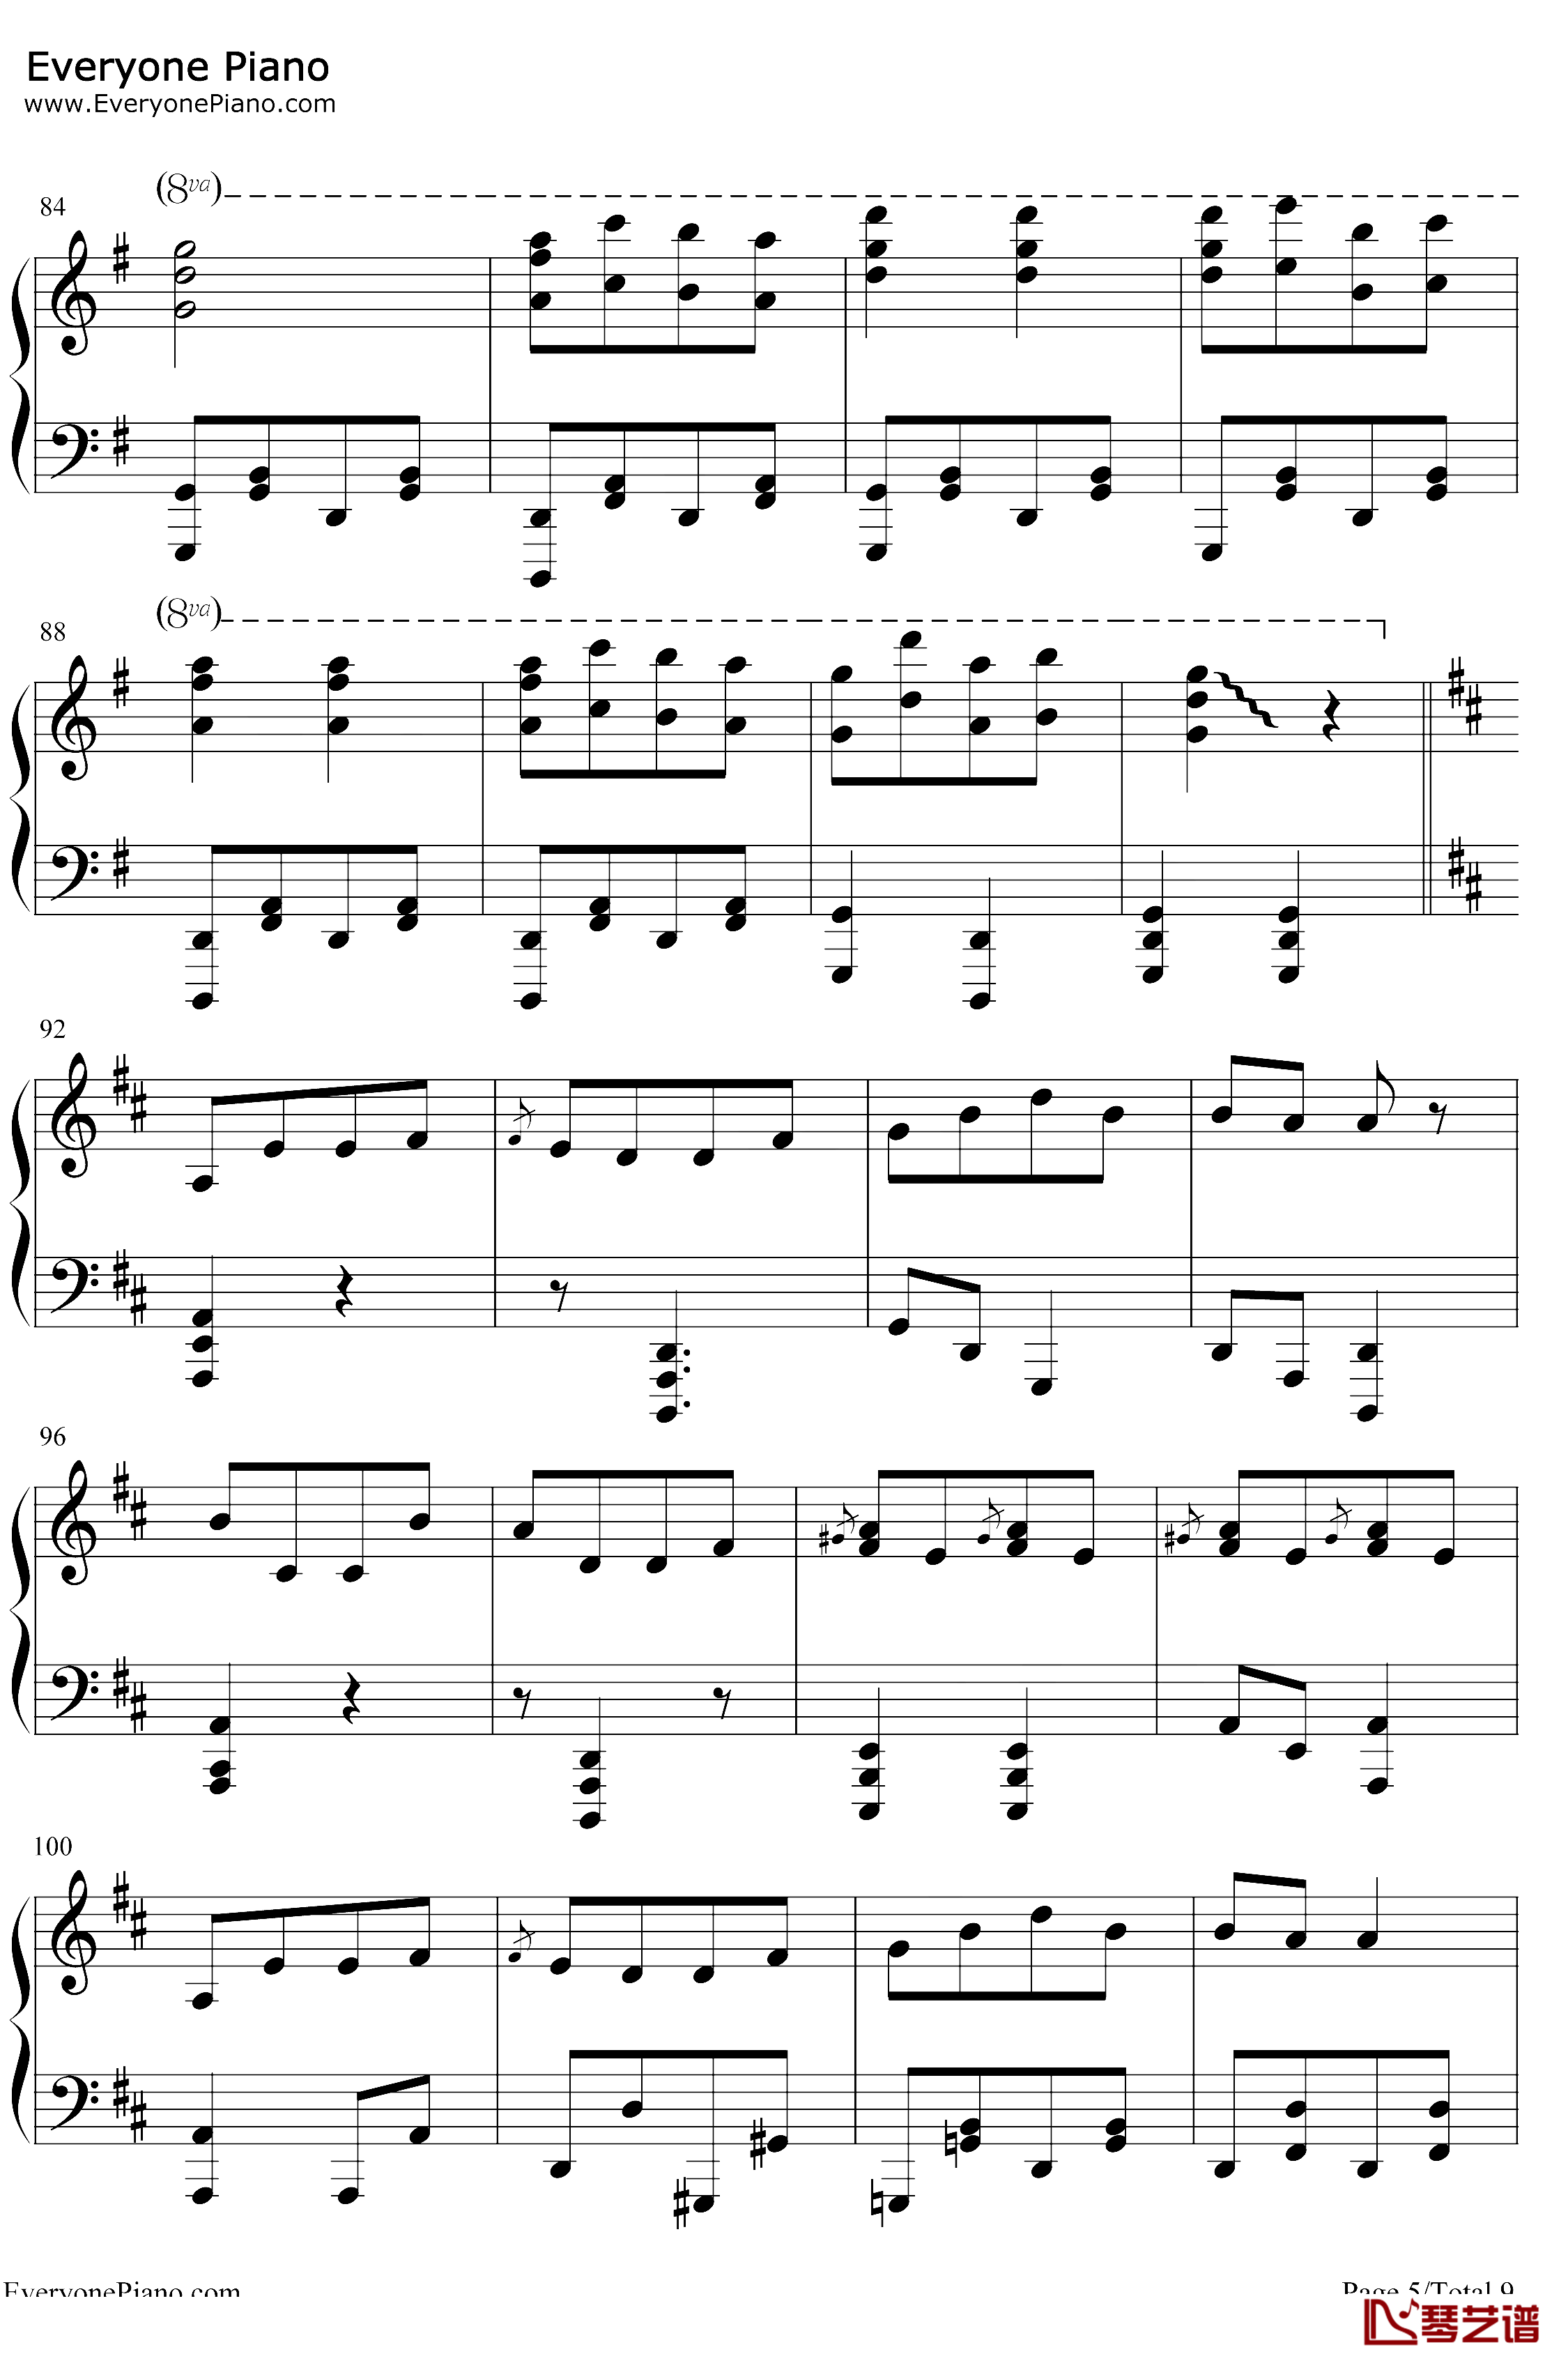 康康舞曲钢琴谱-雅克·奥芬巴赫-触手猴版-天堂与地狱序曲-地狱中的奥菲欧序曲5